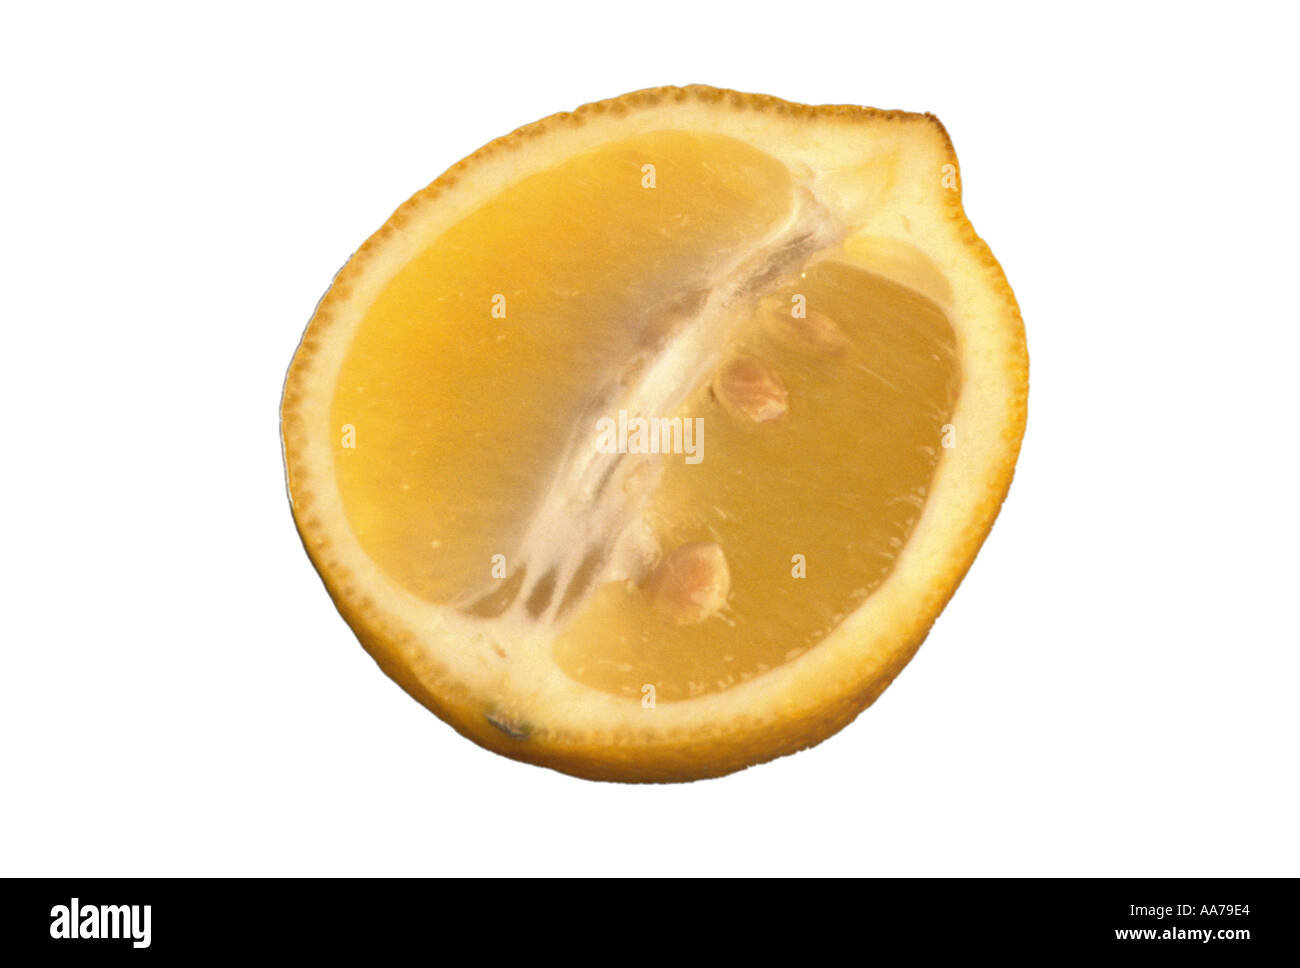 Les fruits d'agrumes citrons citron jaune alimentaire acide sulfureux sur fond blanc zitrone Banque D'Images